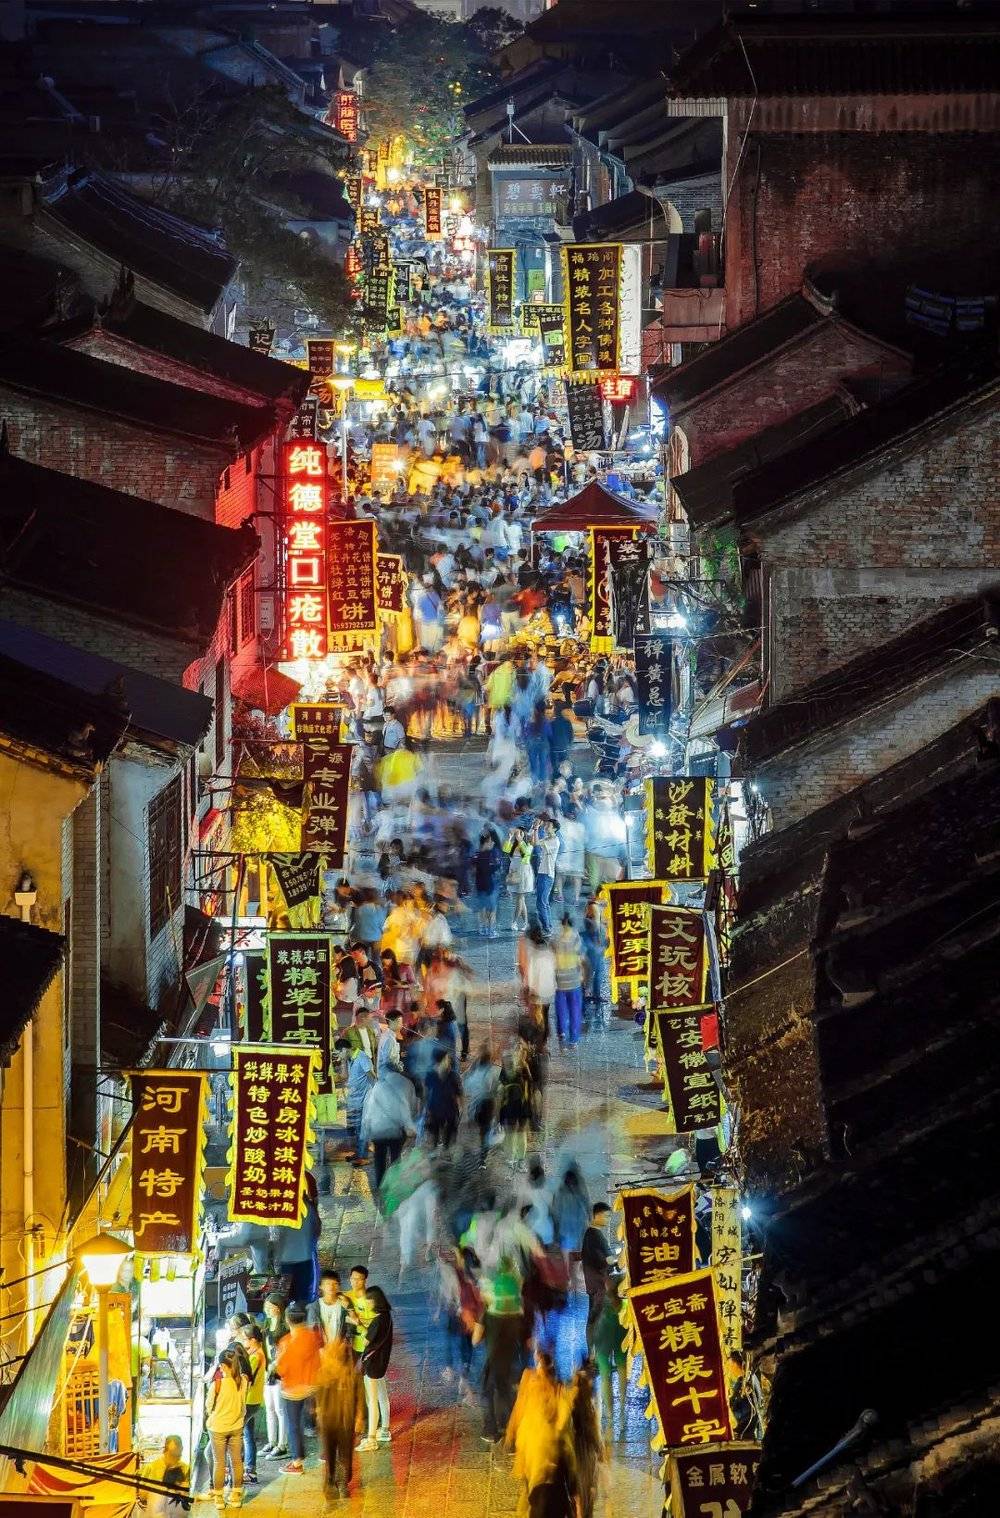 人潮涌动的老街夜市。摄影/王煜文